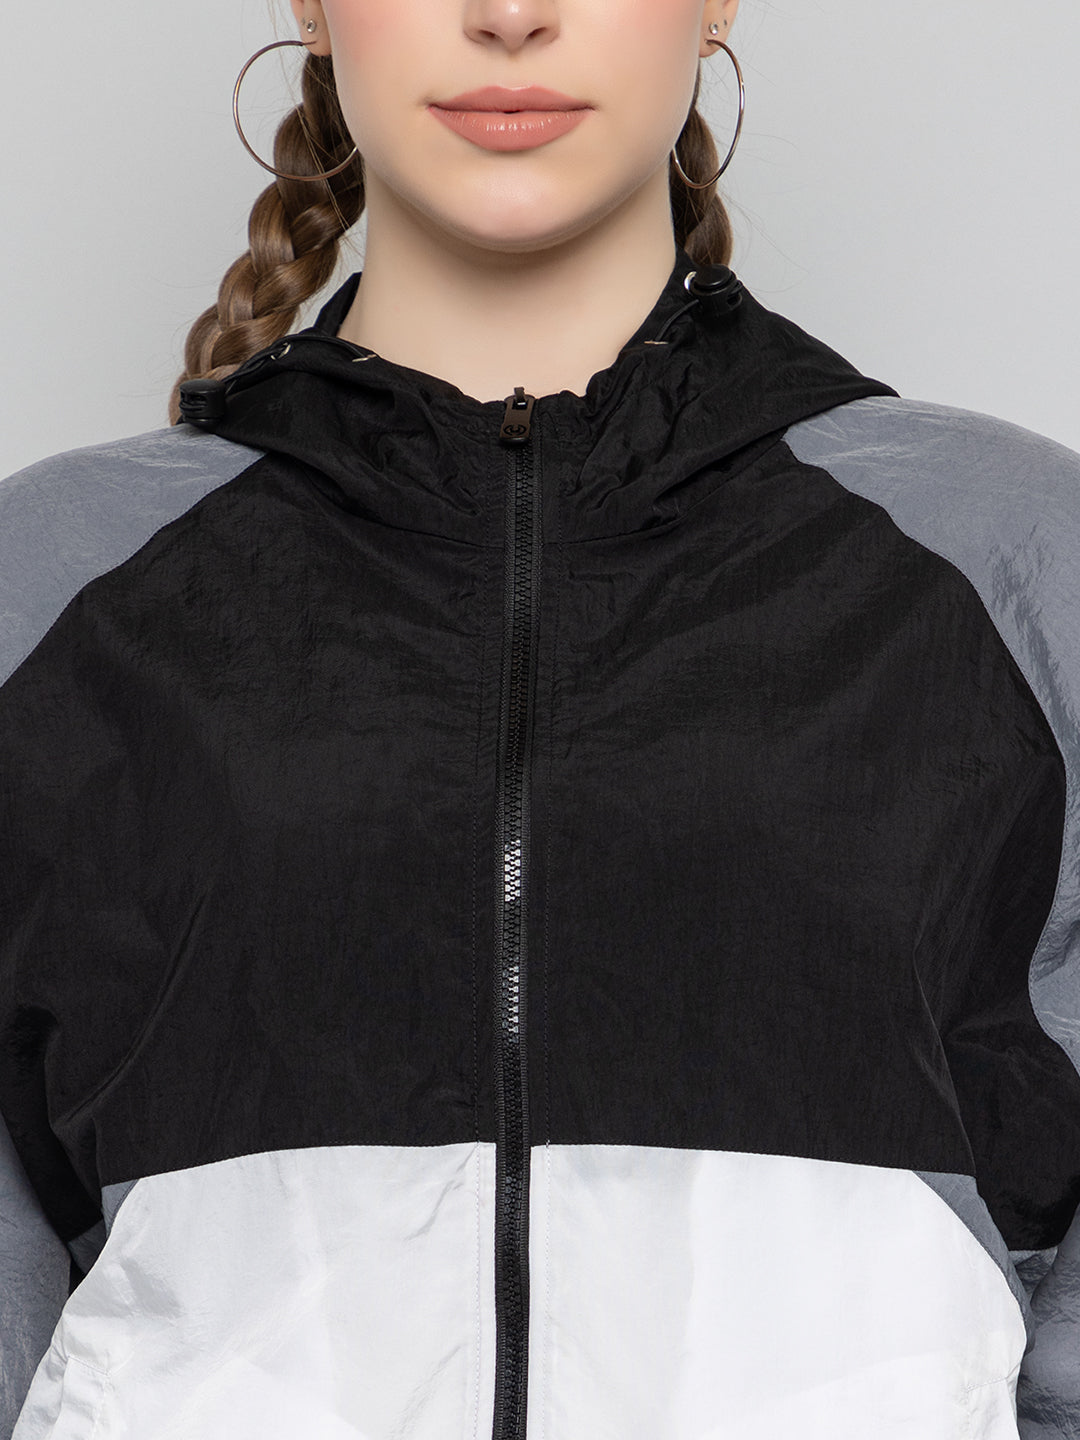 White Double-Zip Sport Jacket | Sports jacket, Jackets, Women